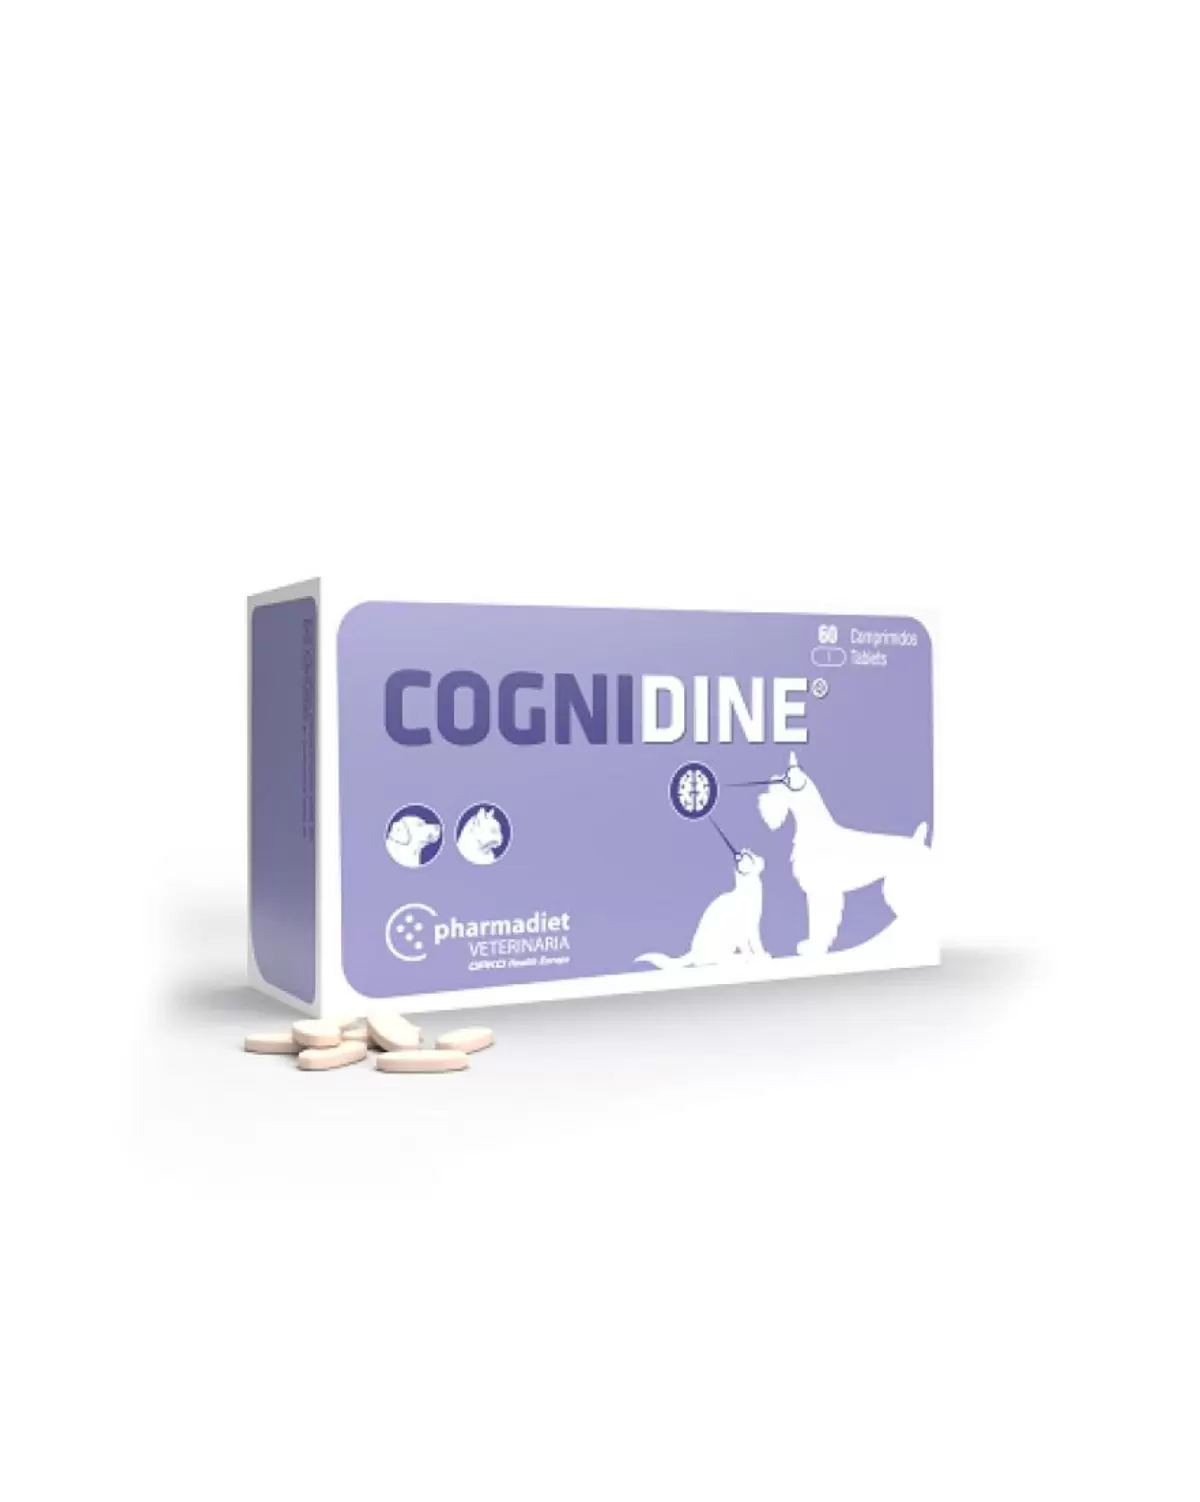 La cognidine es un alimento complementario que aporta nutrientes que ayudan al sistema cognitivo en perros y gatos.